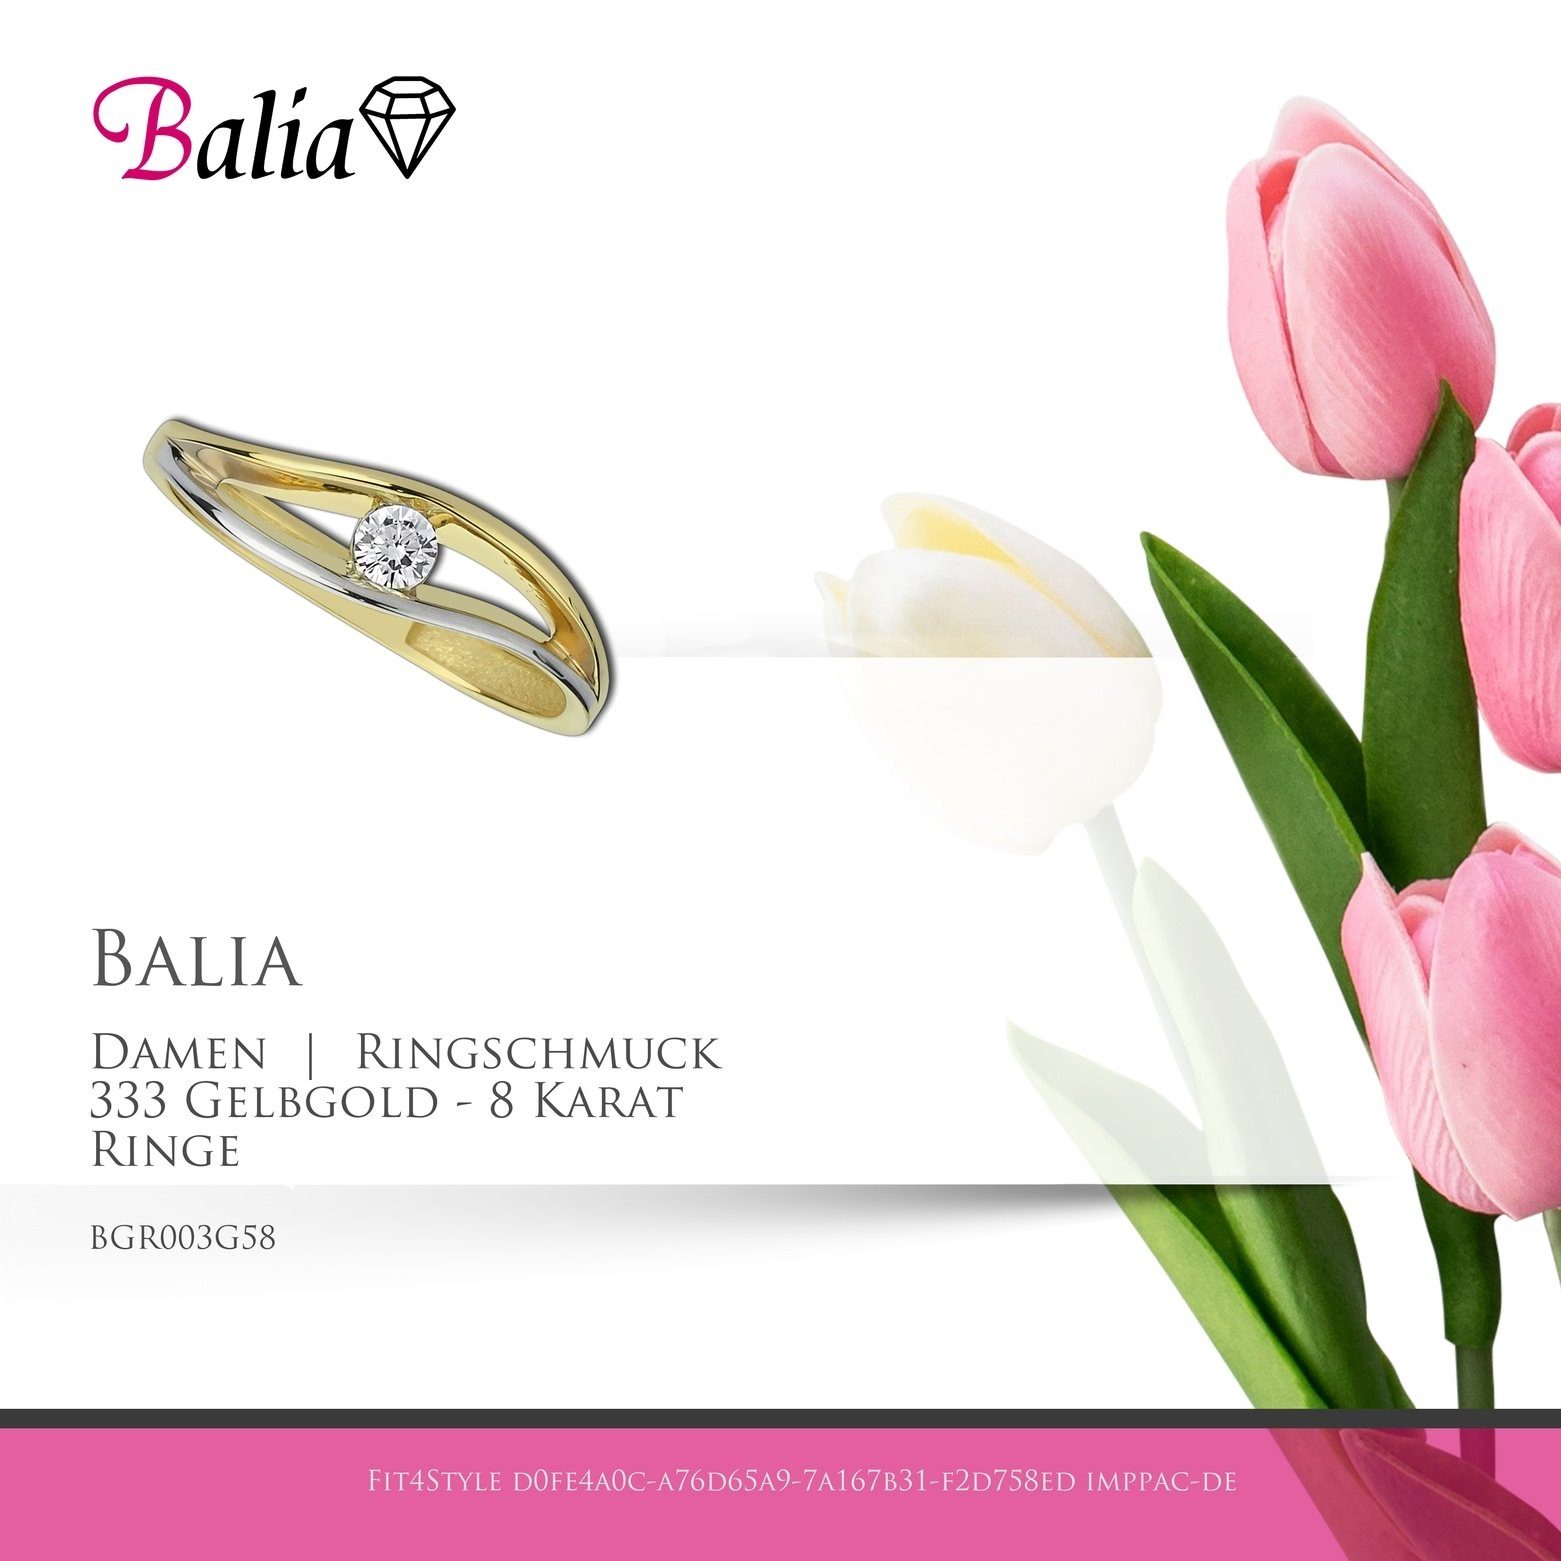 Ring Gelbgold (Fingerring), aus Balia Farbe: 8 Ring gold Balia Gr.58 - Damen 8Karat Gelbgold Goldring Karat, geschwungen weiß, Damen 333